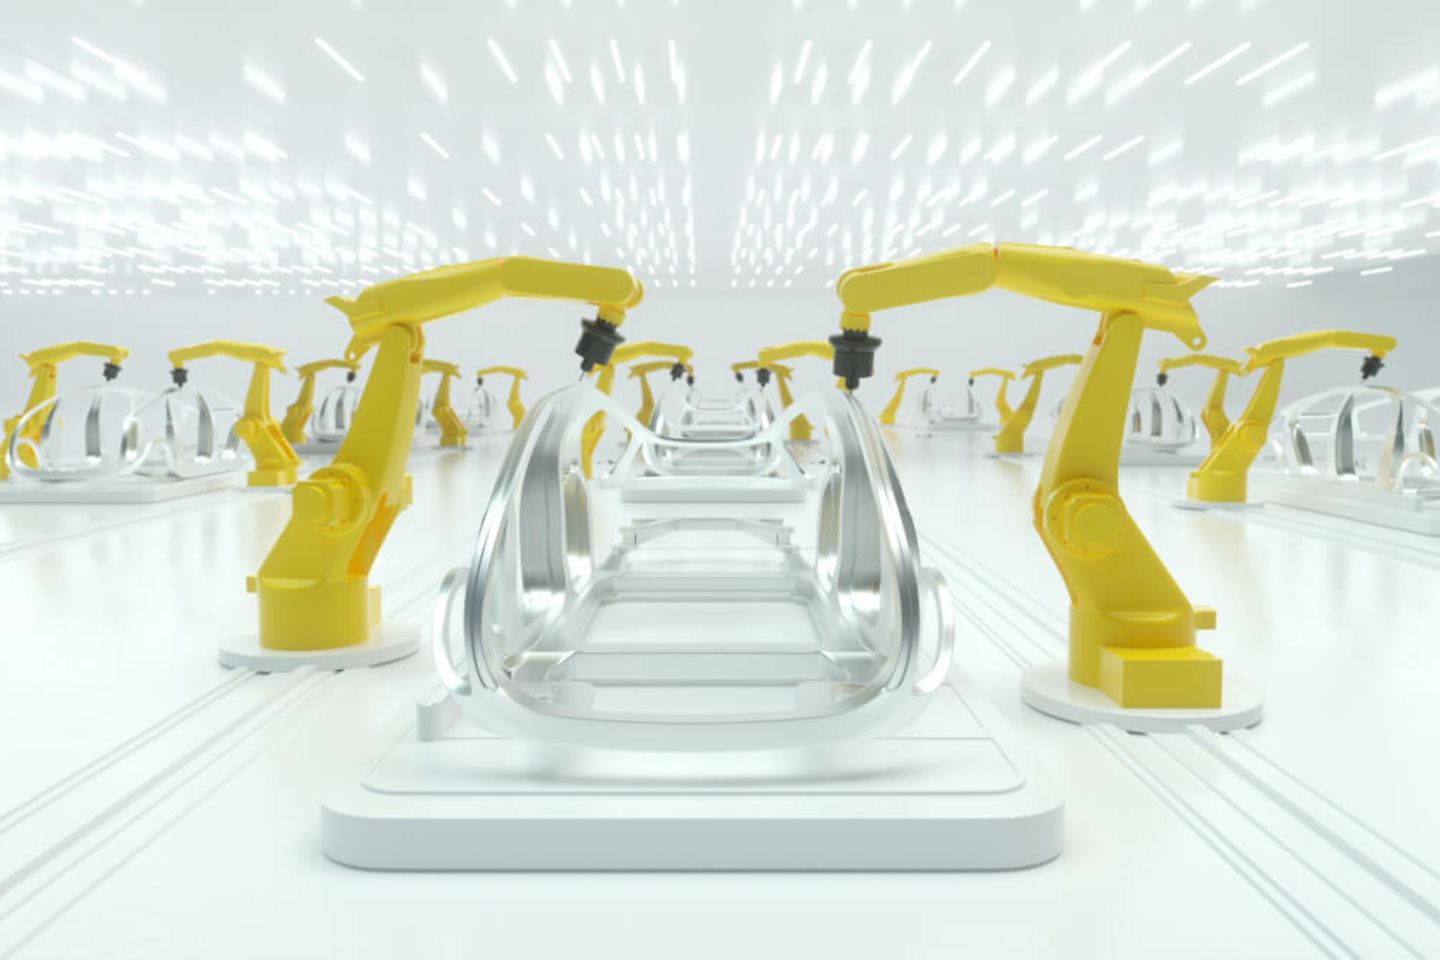 gelbe Roboterarme bauen eine Karosserie